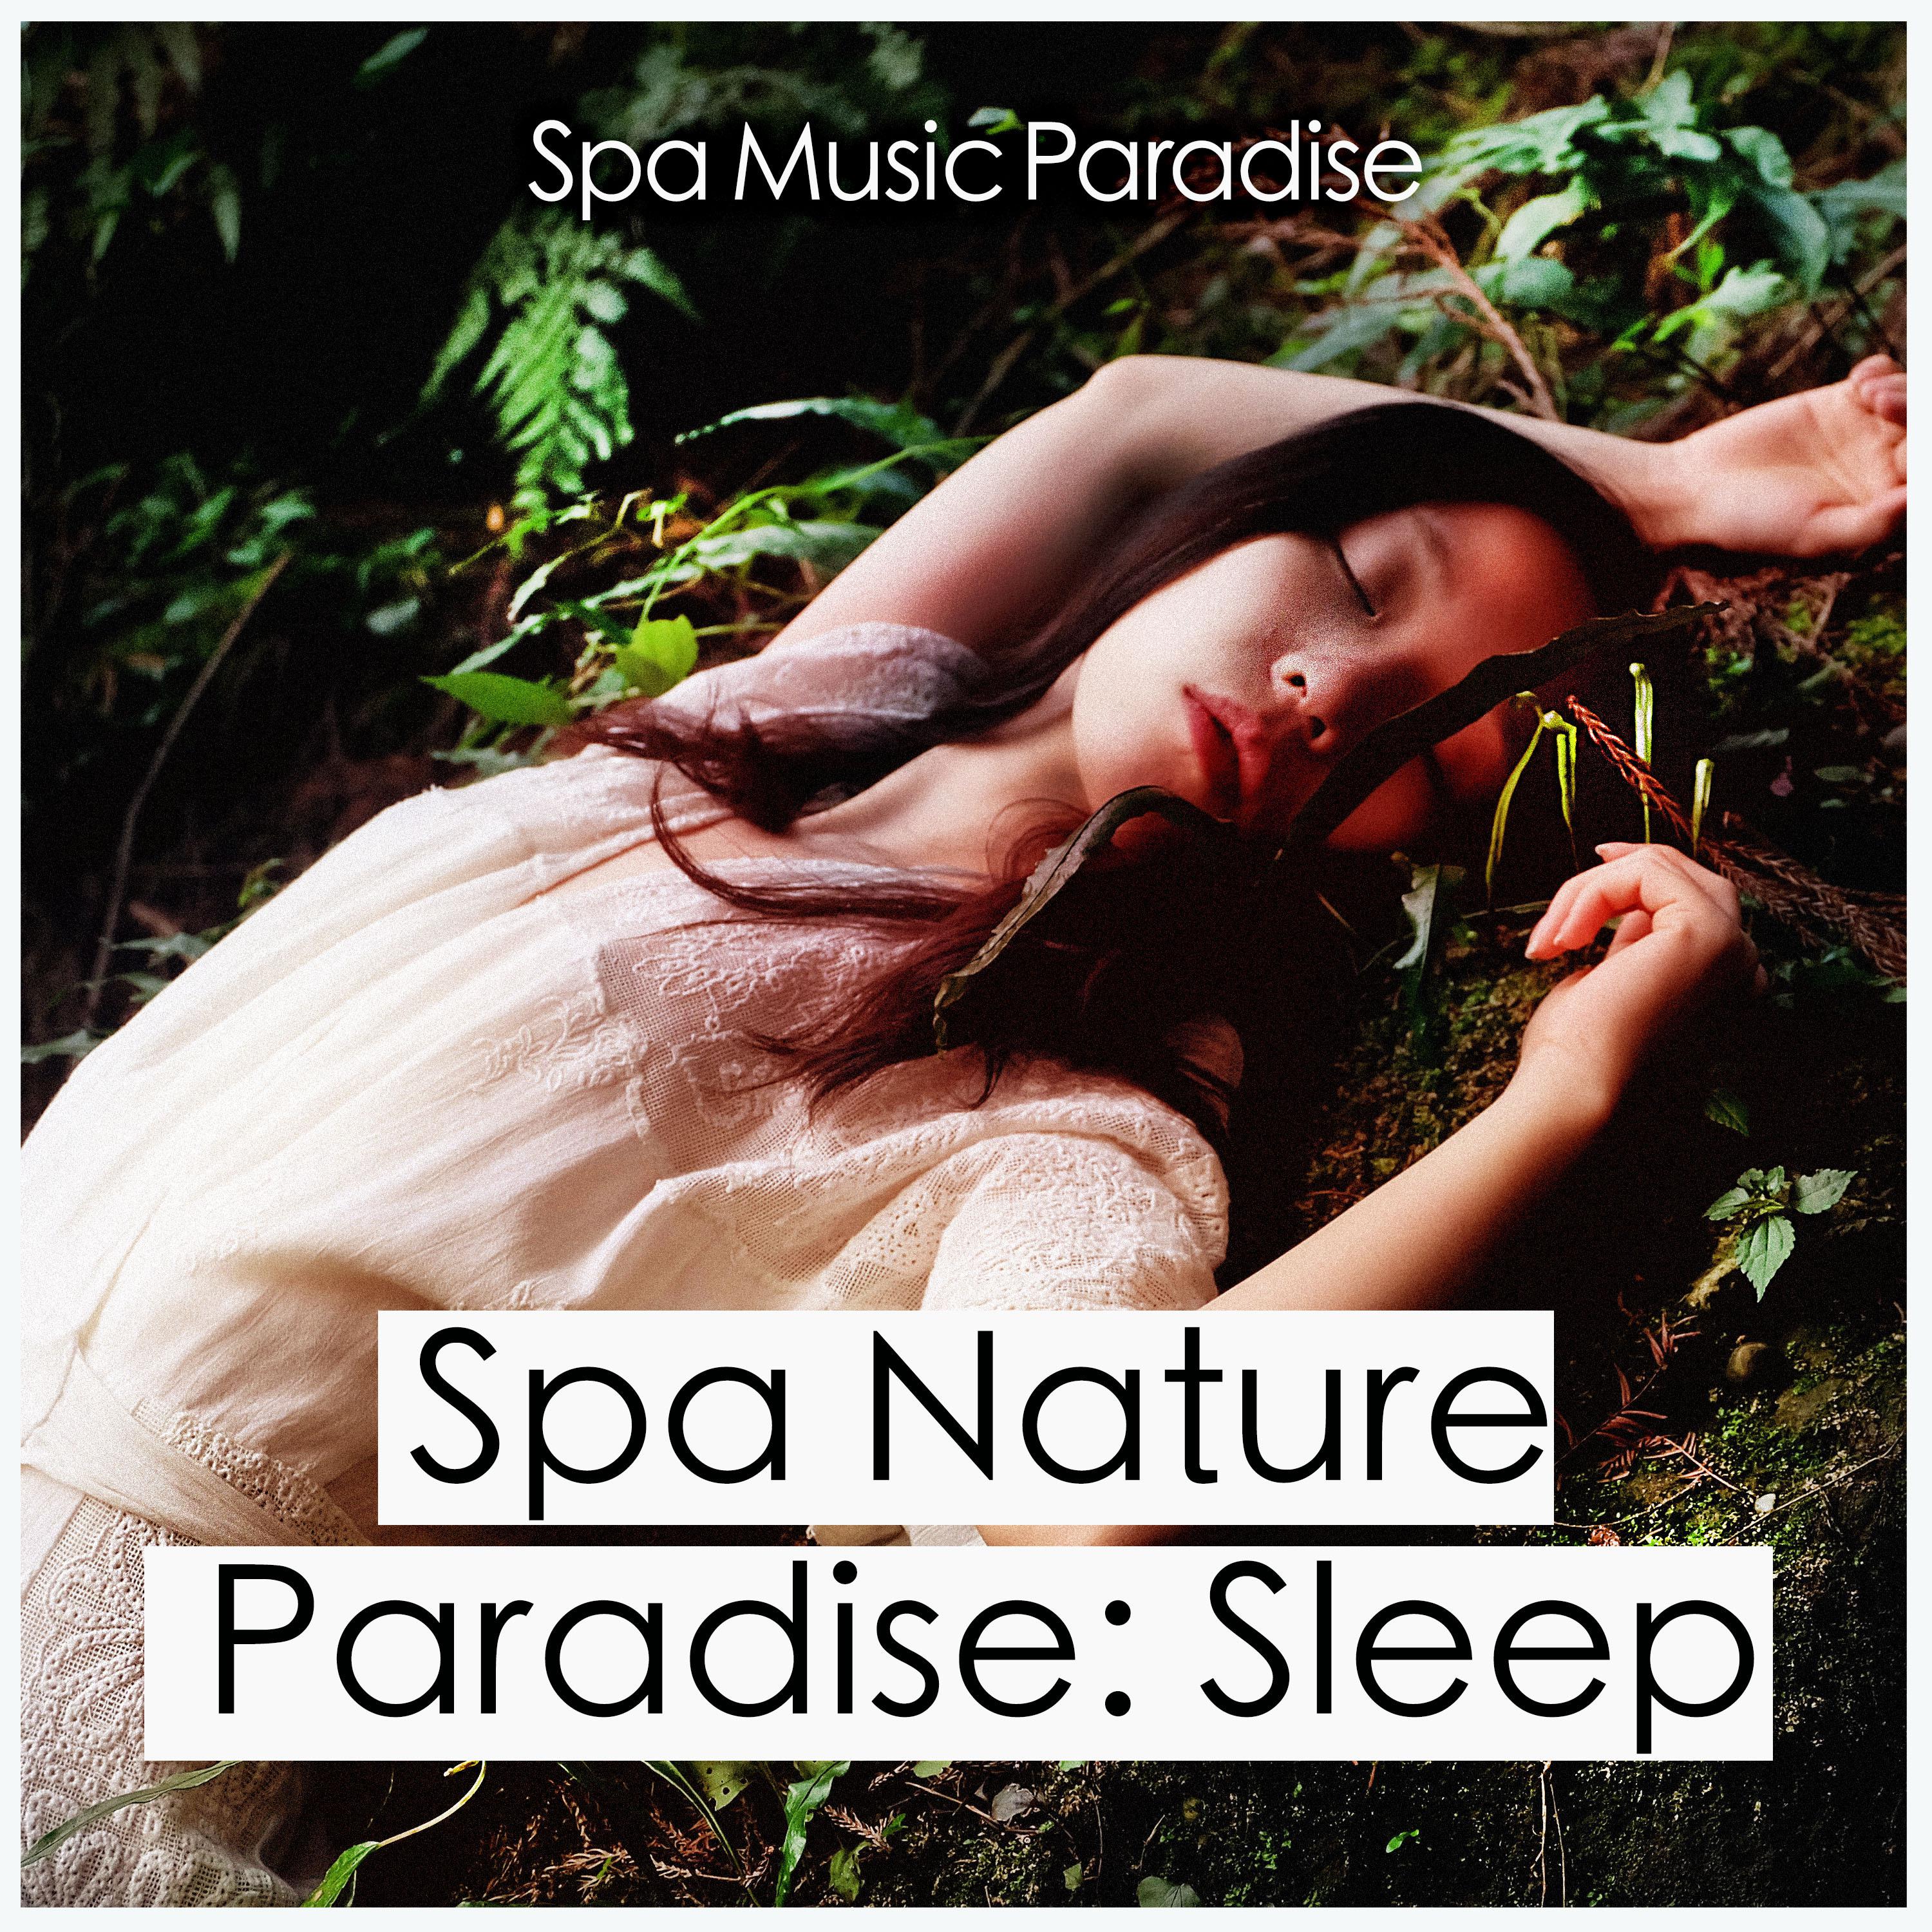 Spa Nature Paradise: Sleep